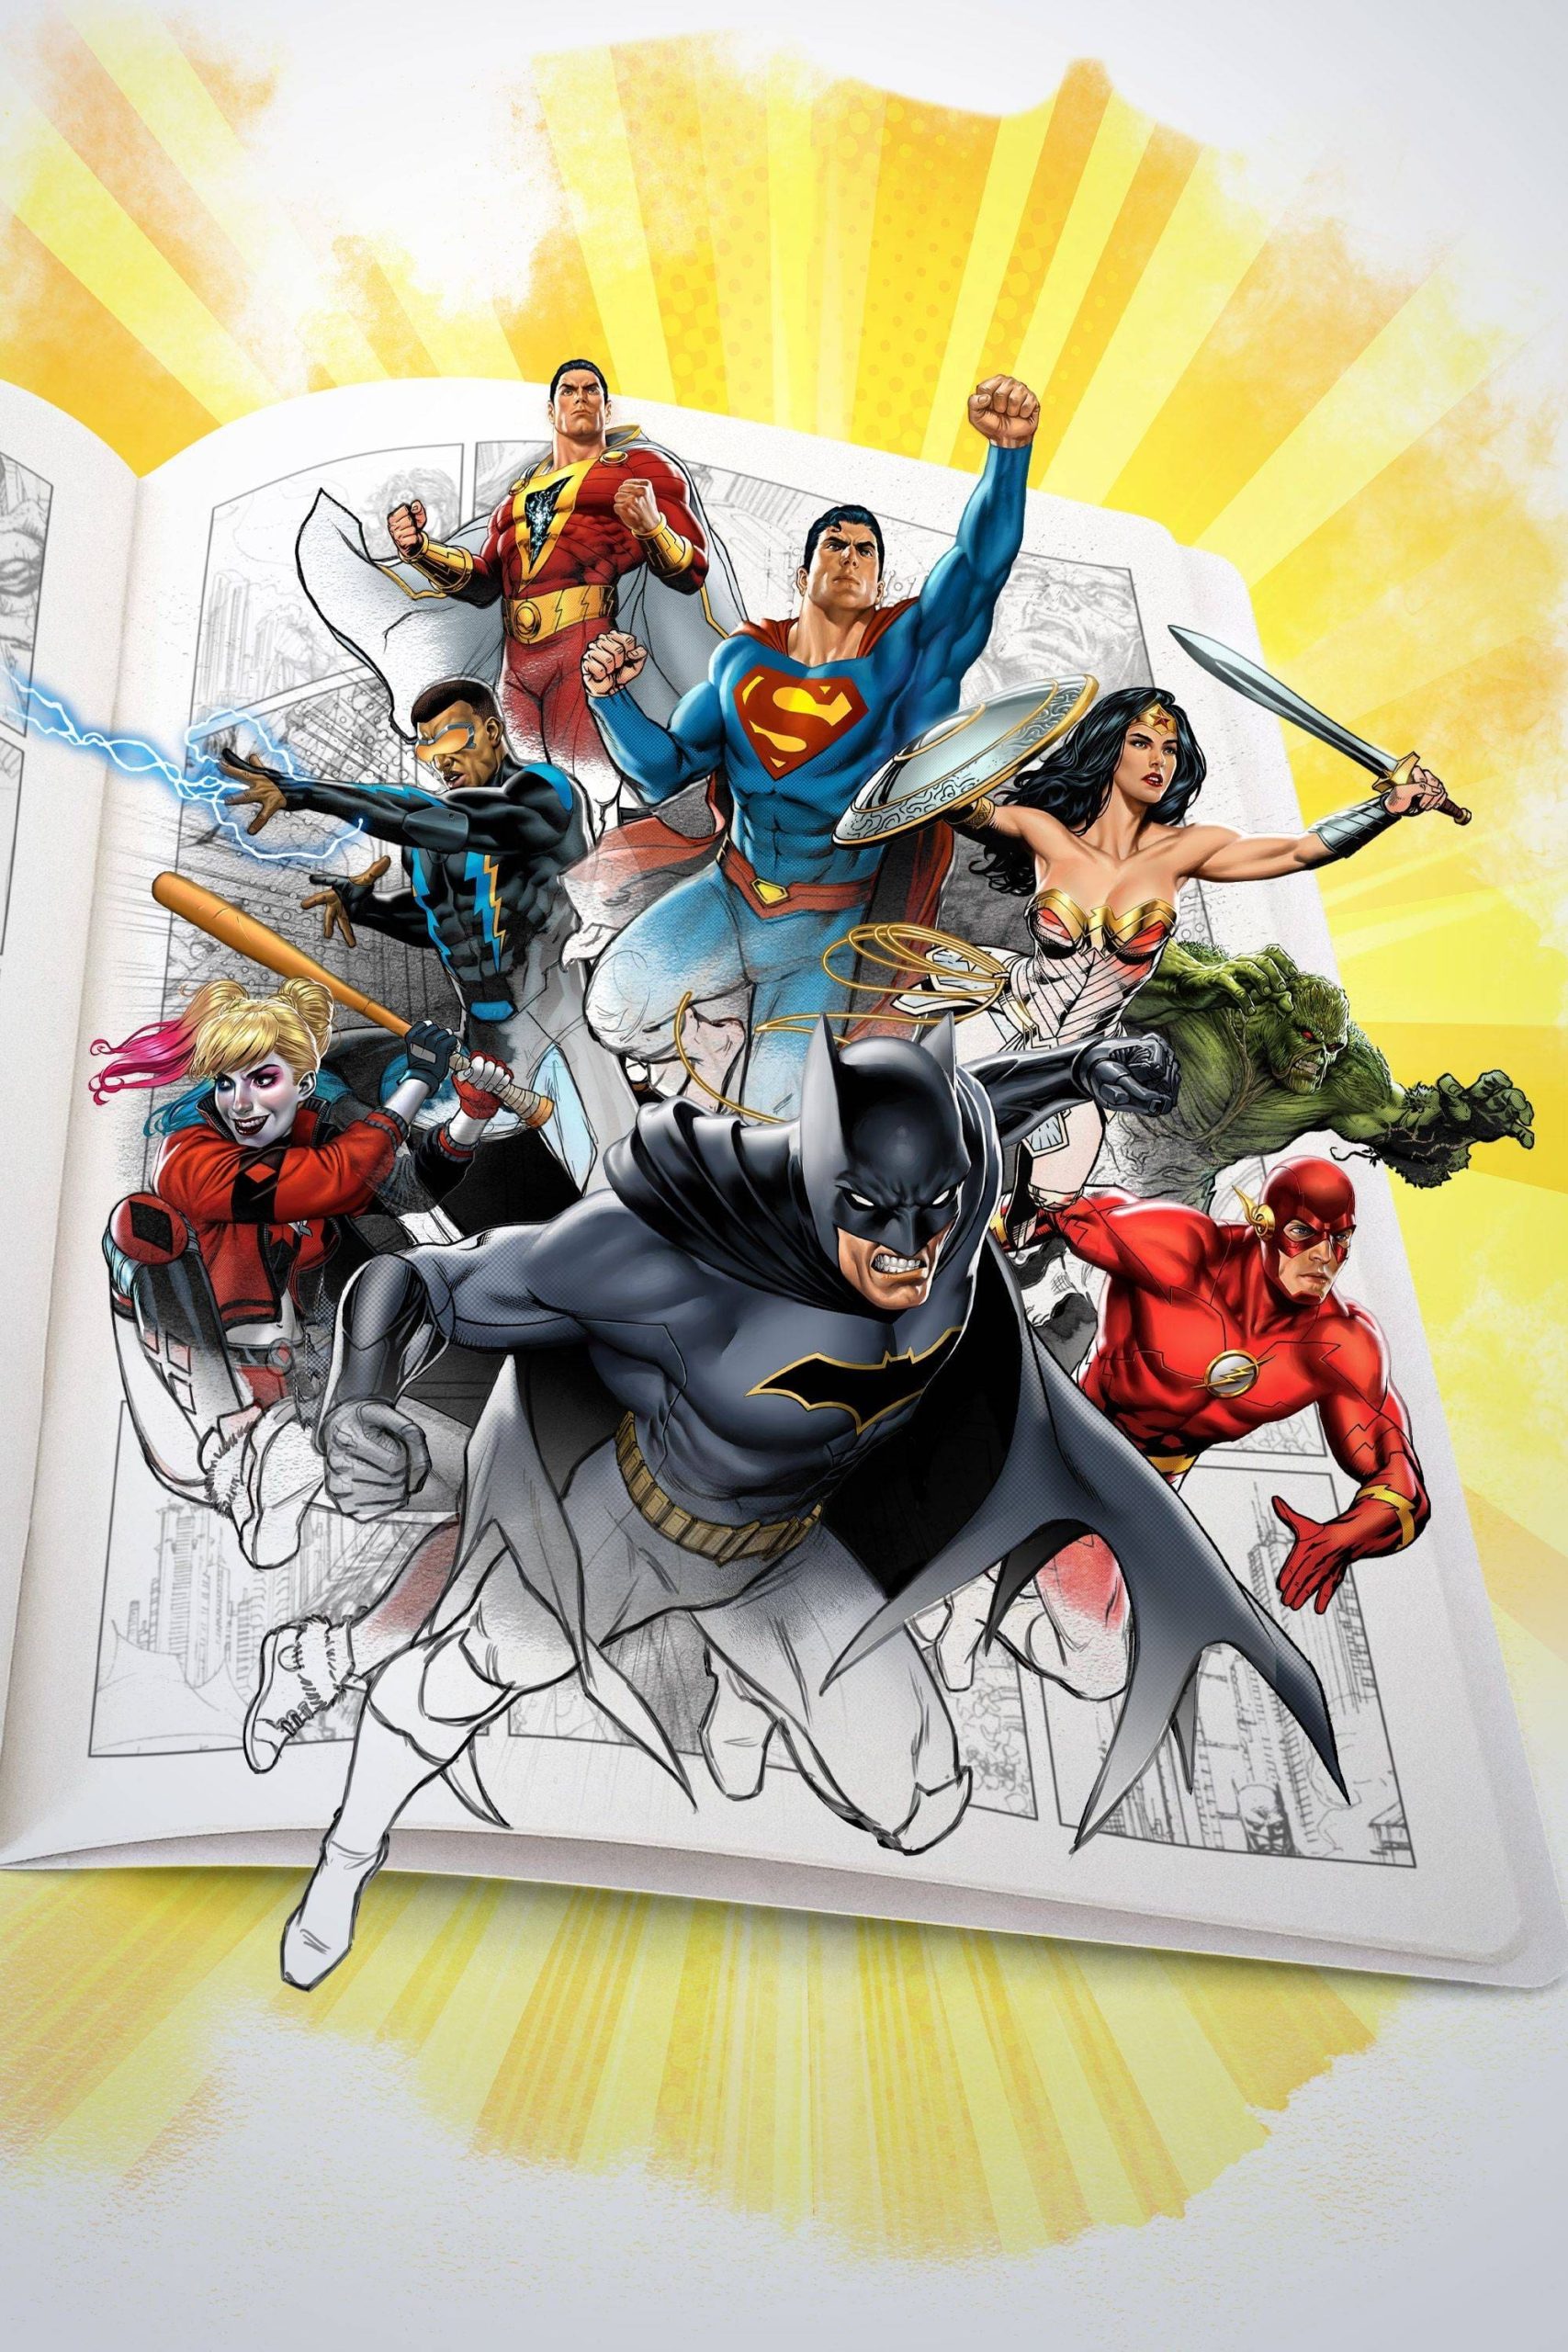 پیدایش دی سی (Superpowered: The DC Story)